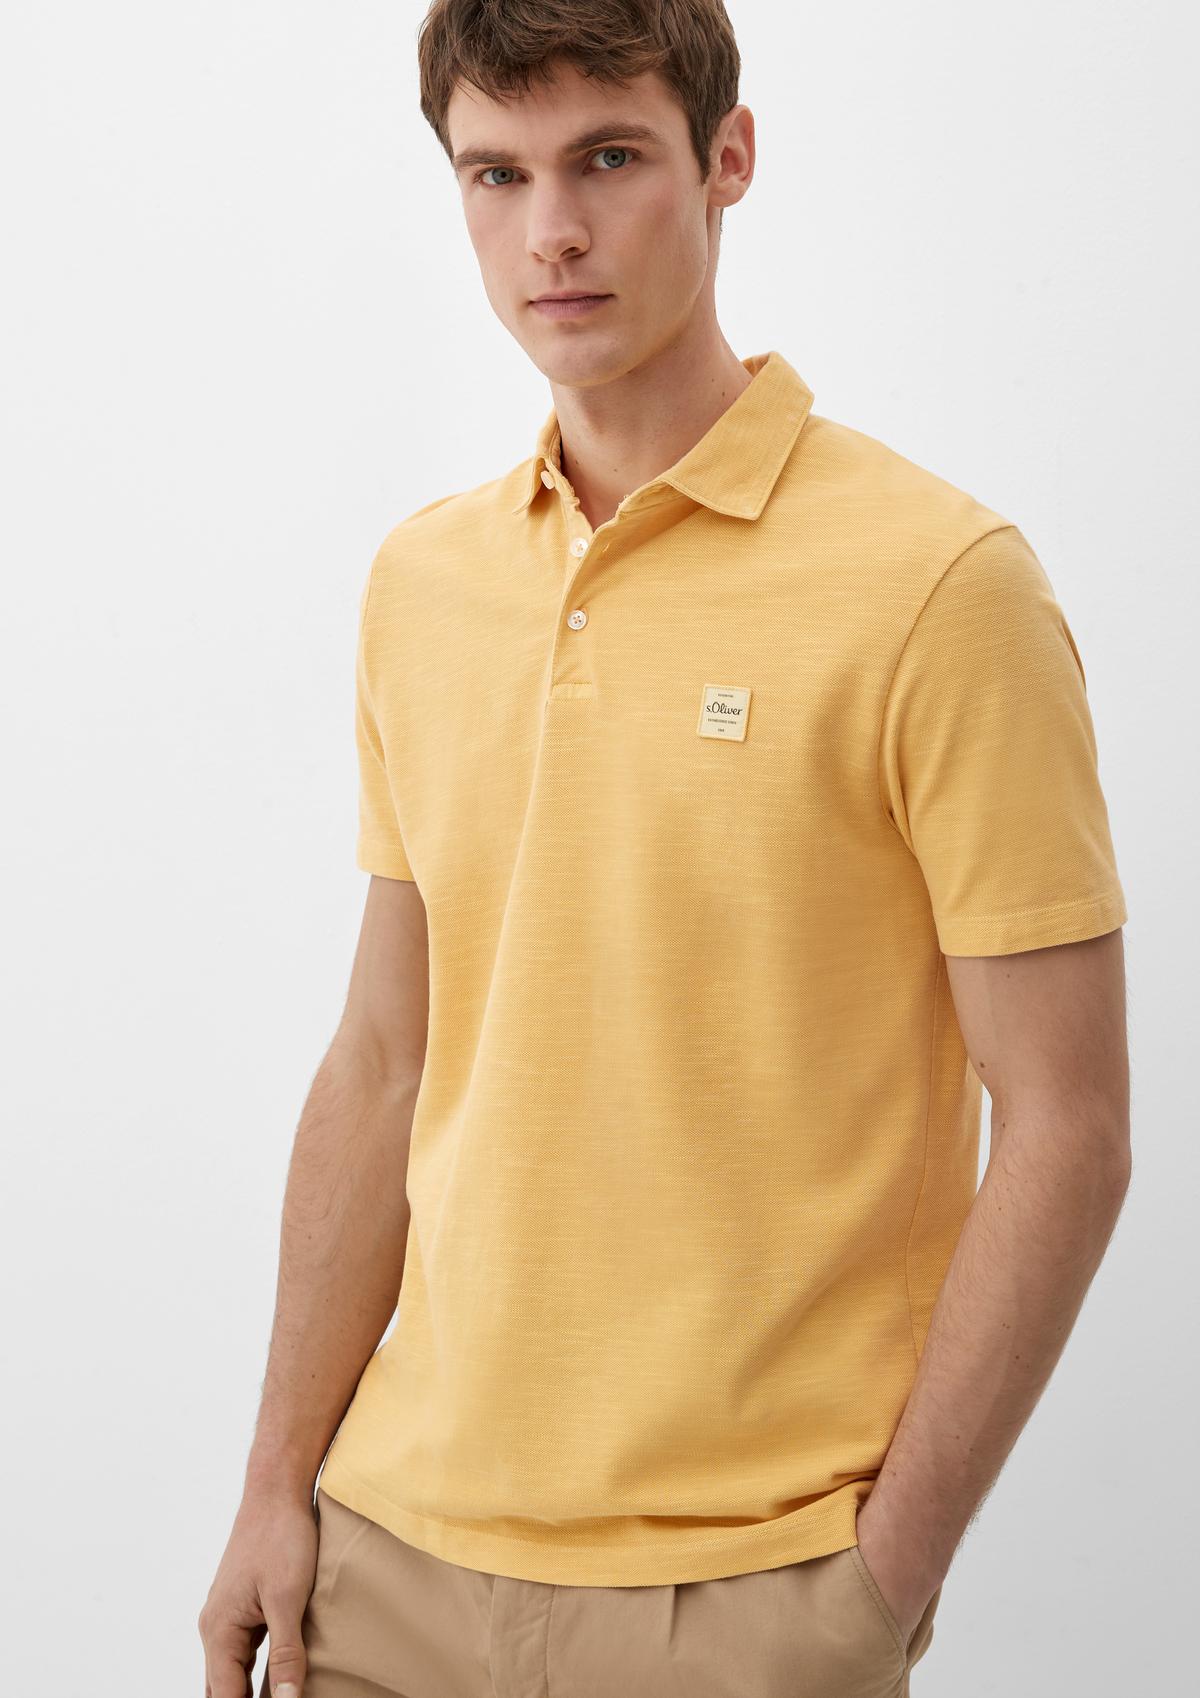 appliqué lemon - shirt a Polo with logo